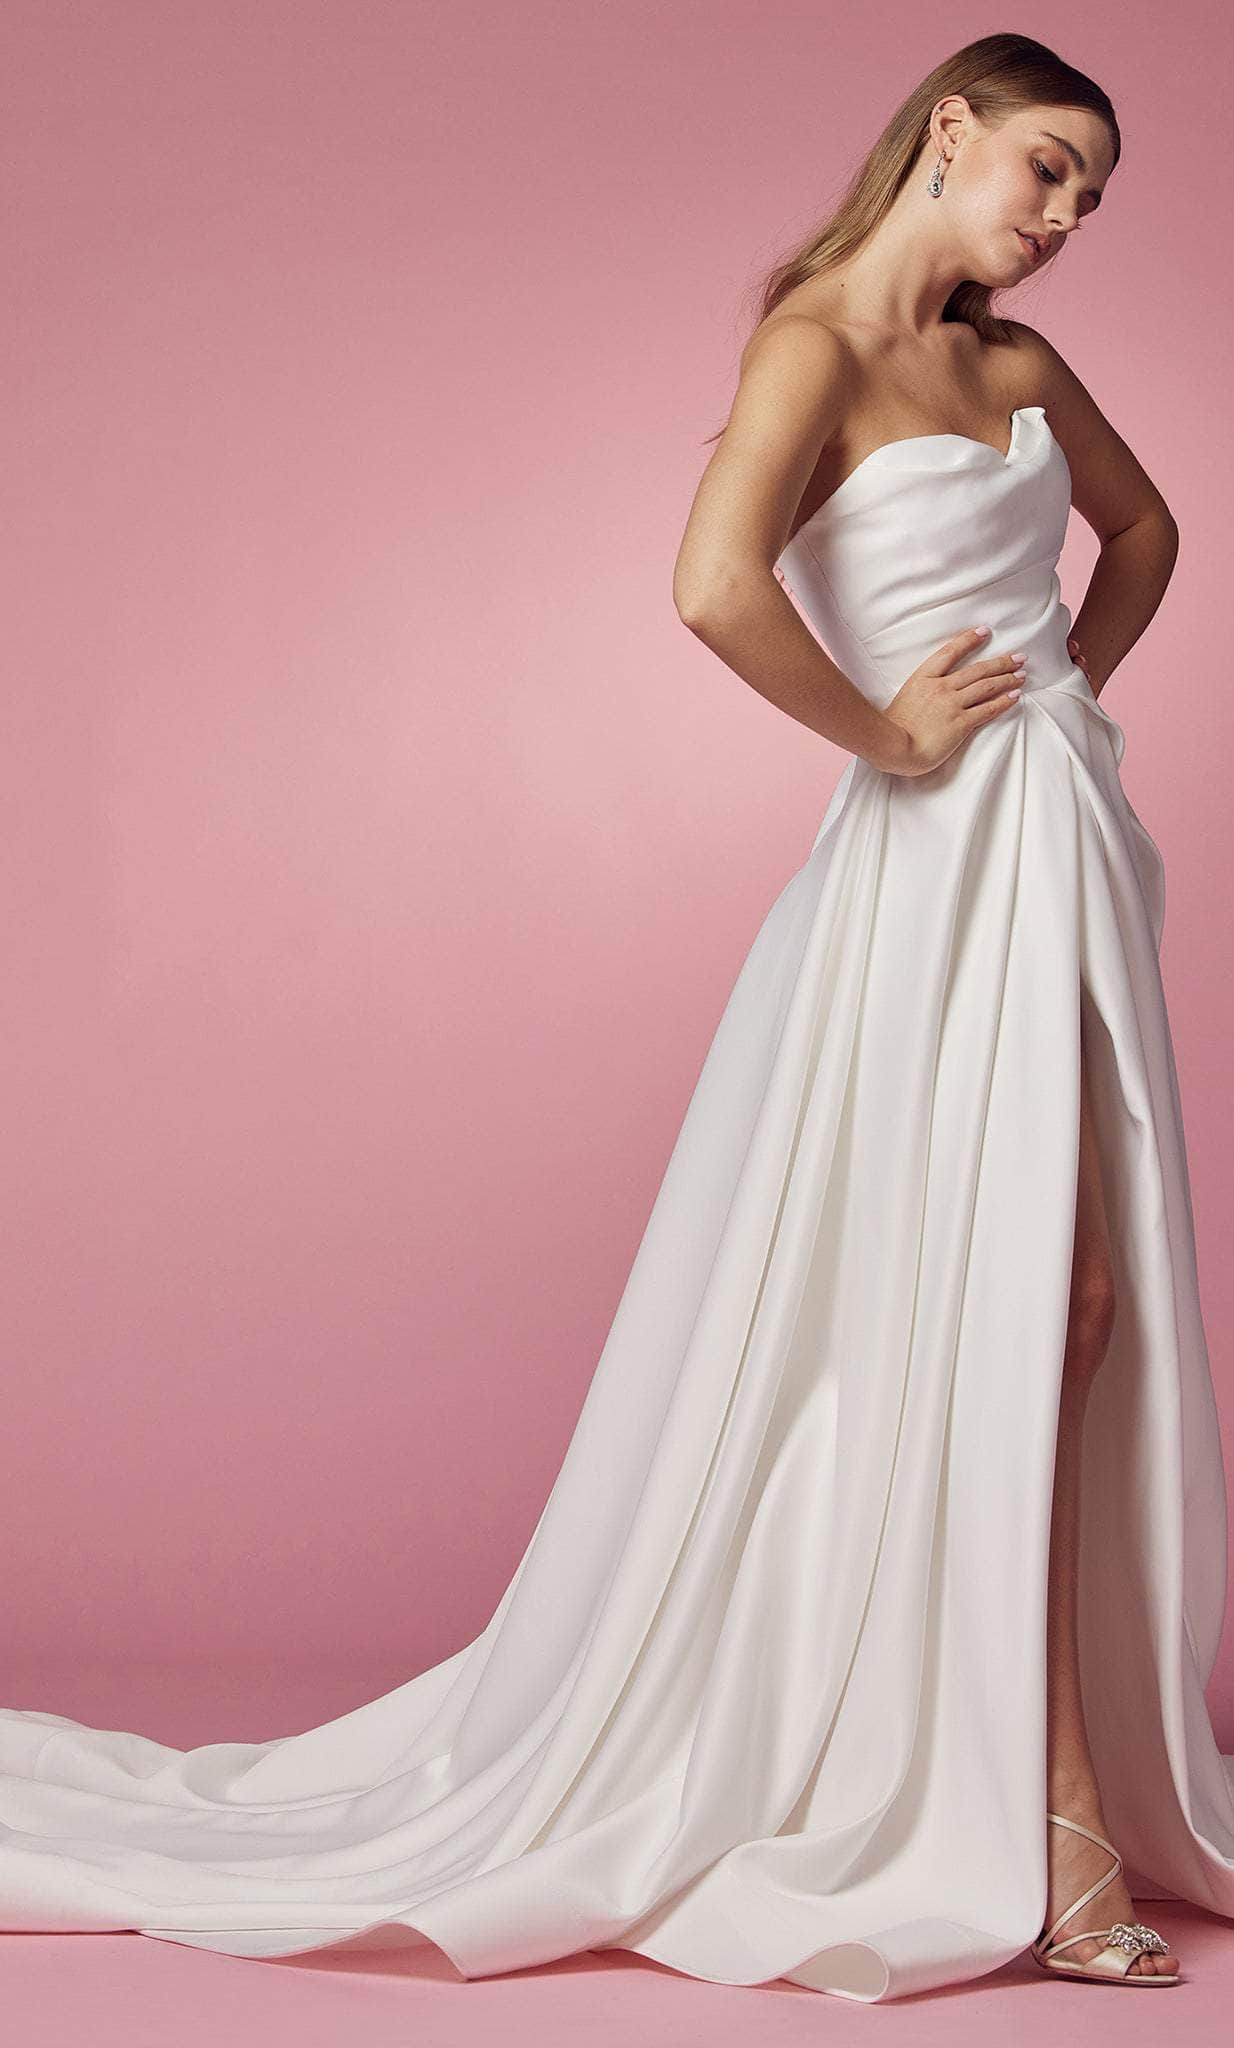 Nox Anabel JW938 - Strapless Minimalist Slit Gown Prom Dresses